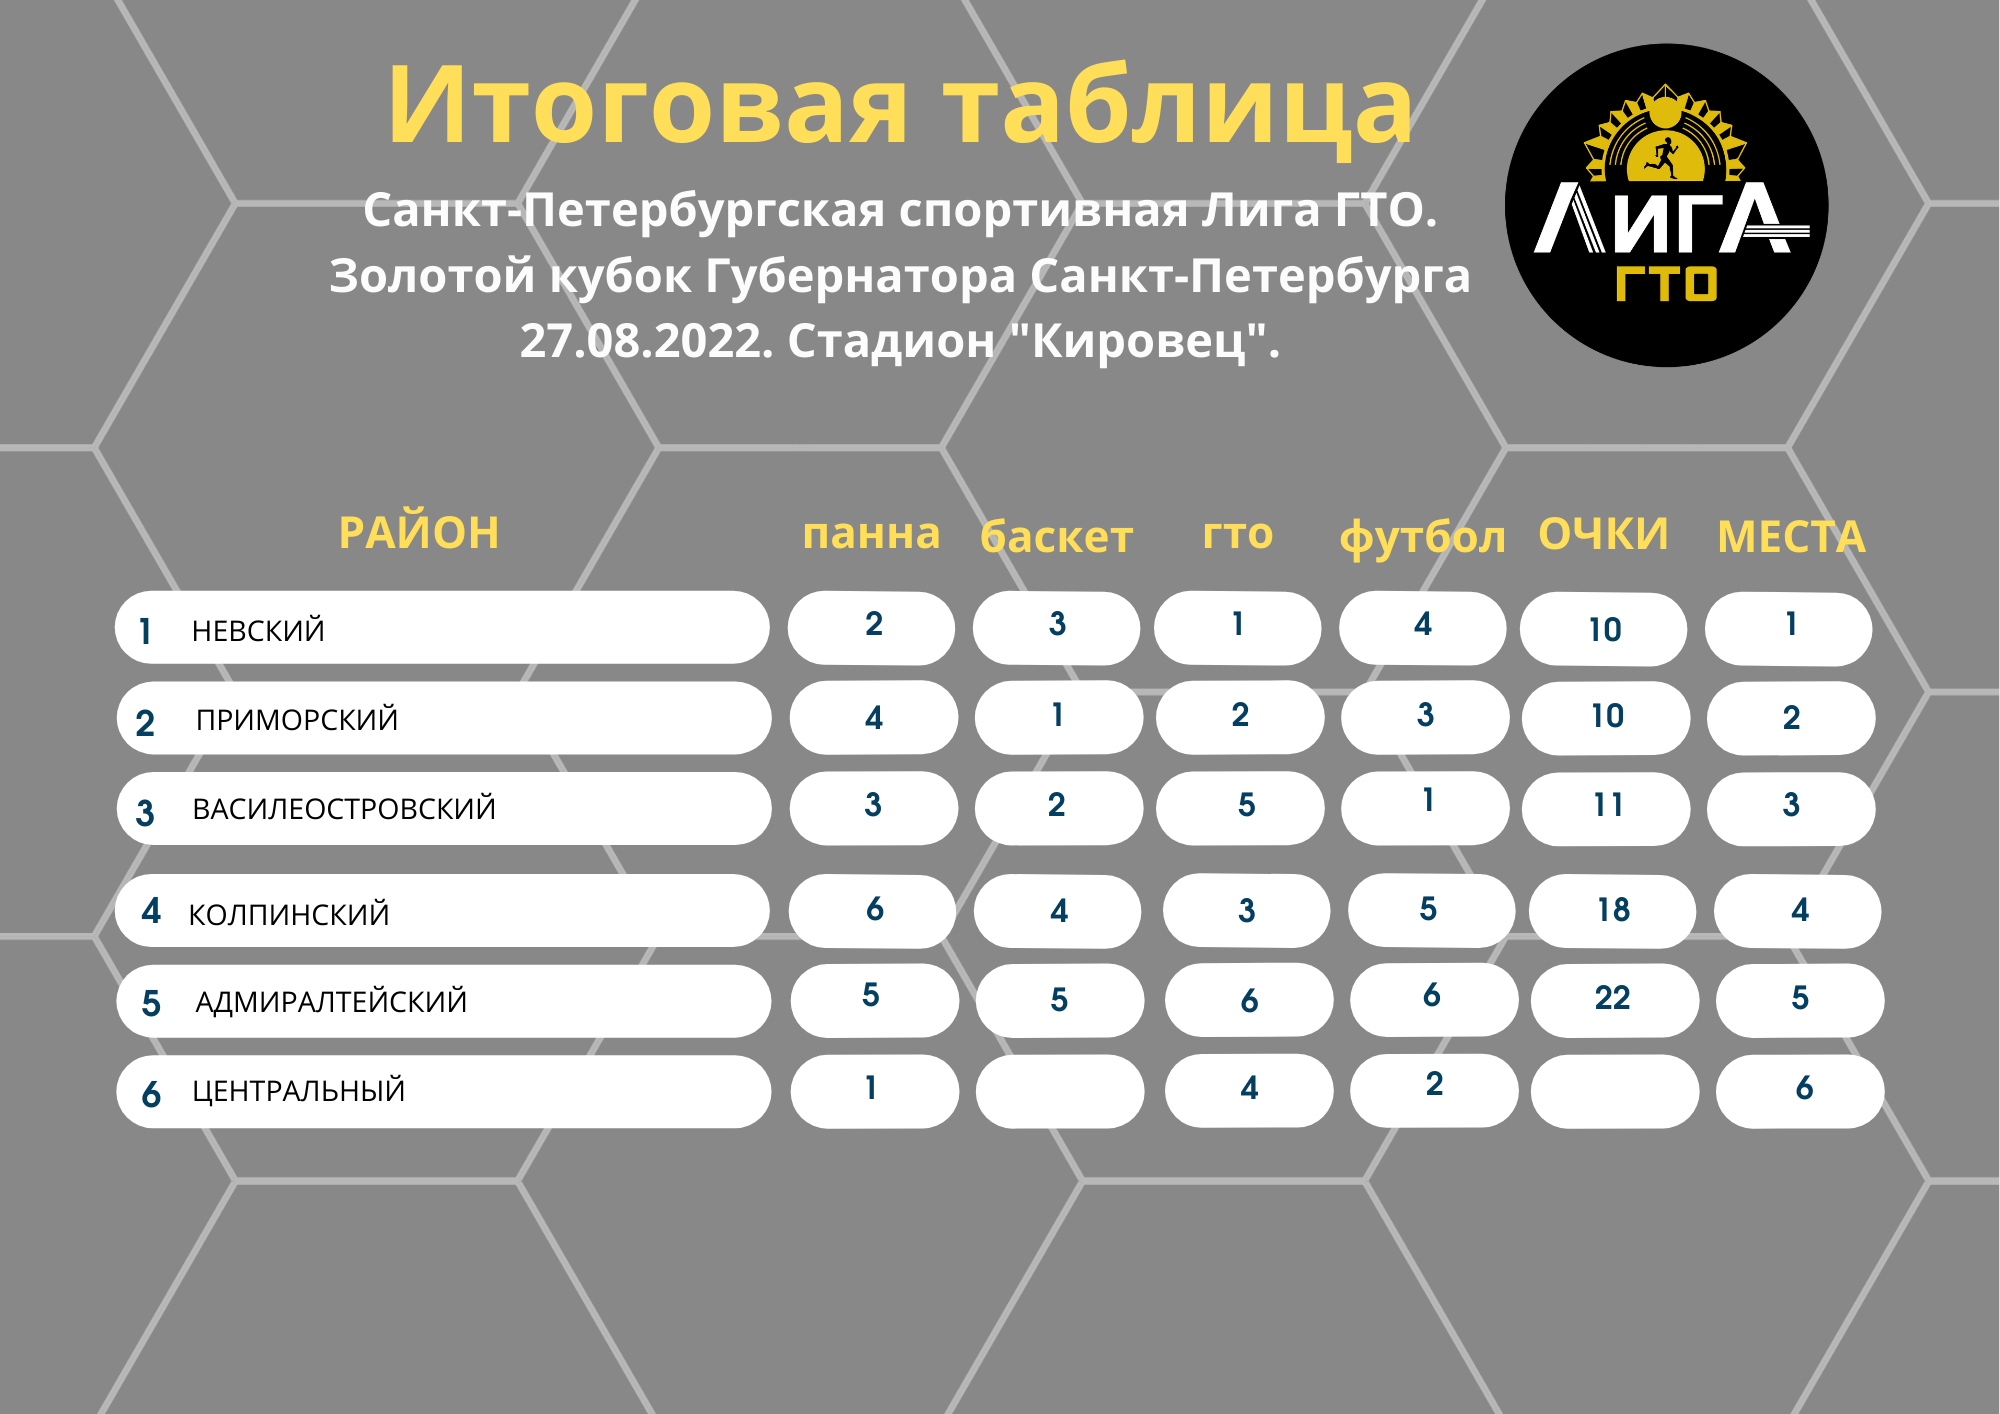 2 лига золотая группа турнирная таблица